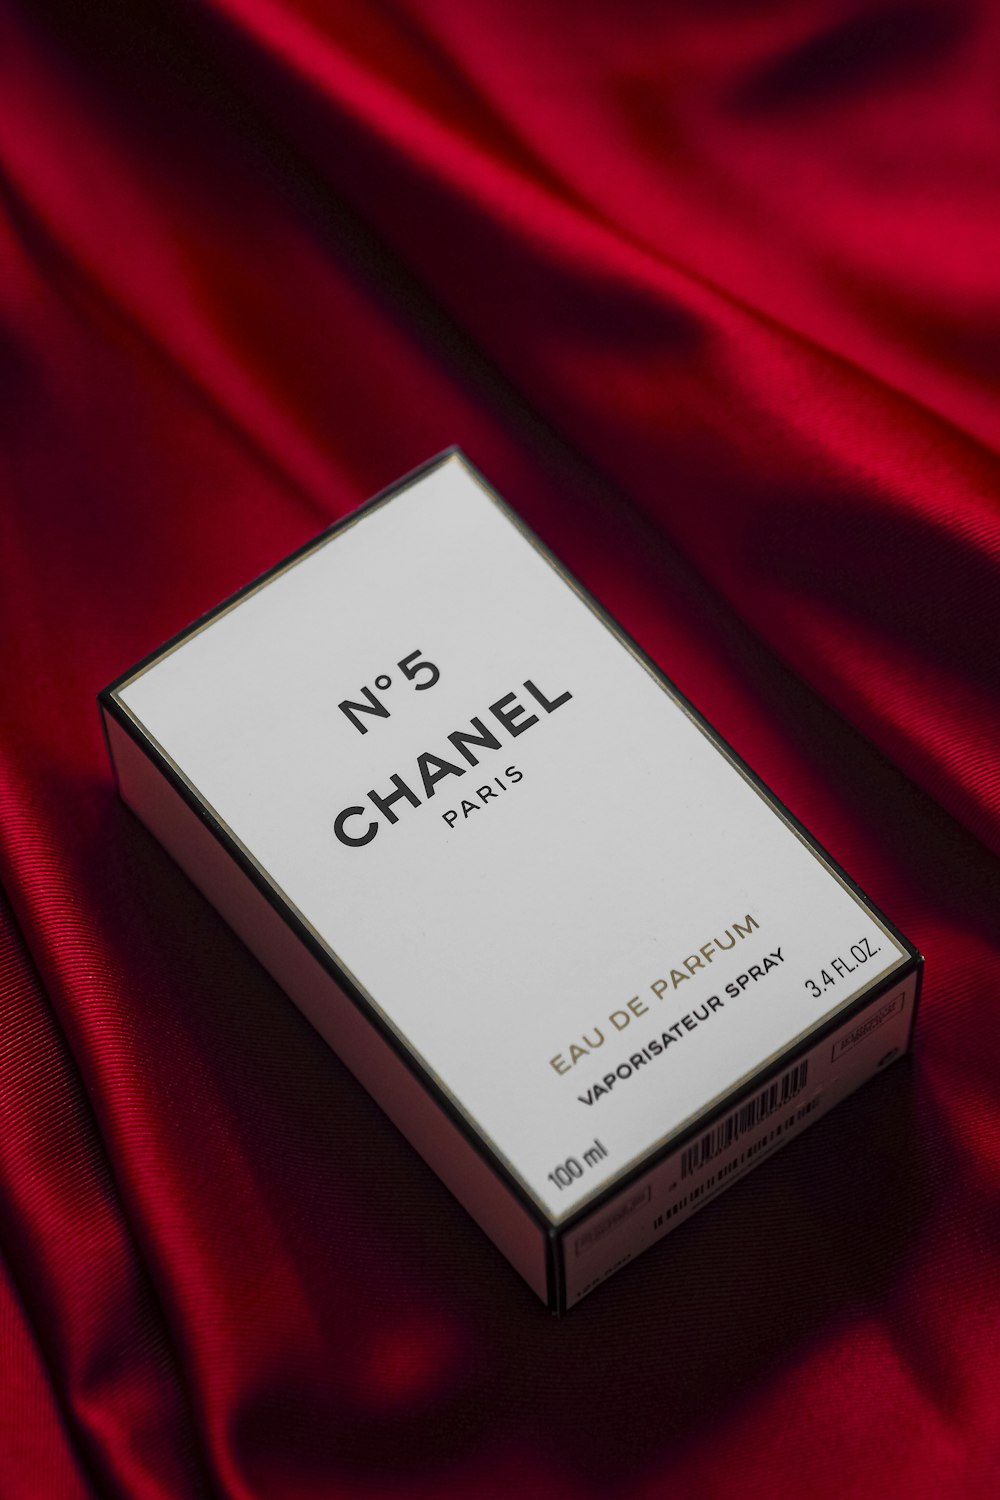 Una caja de Chanel nº 5 sobre un paño rojo